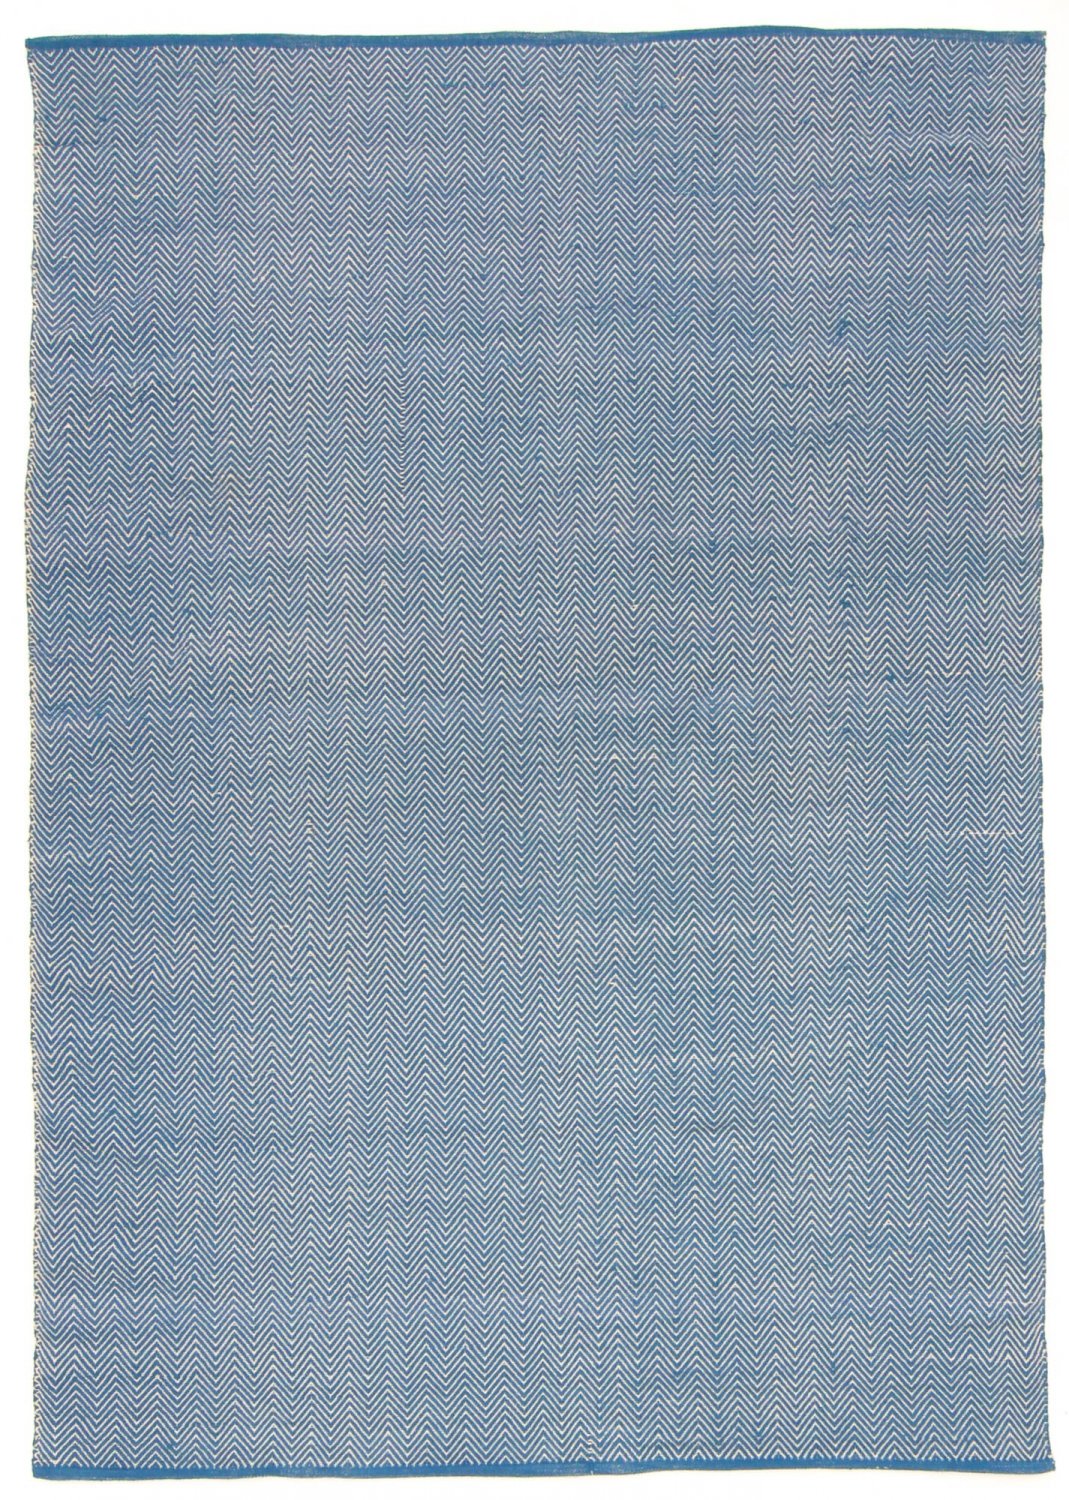 Dywan bawełniany - Marina (niebieski)